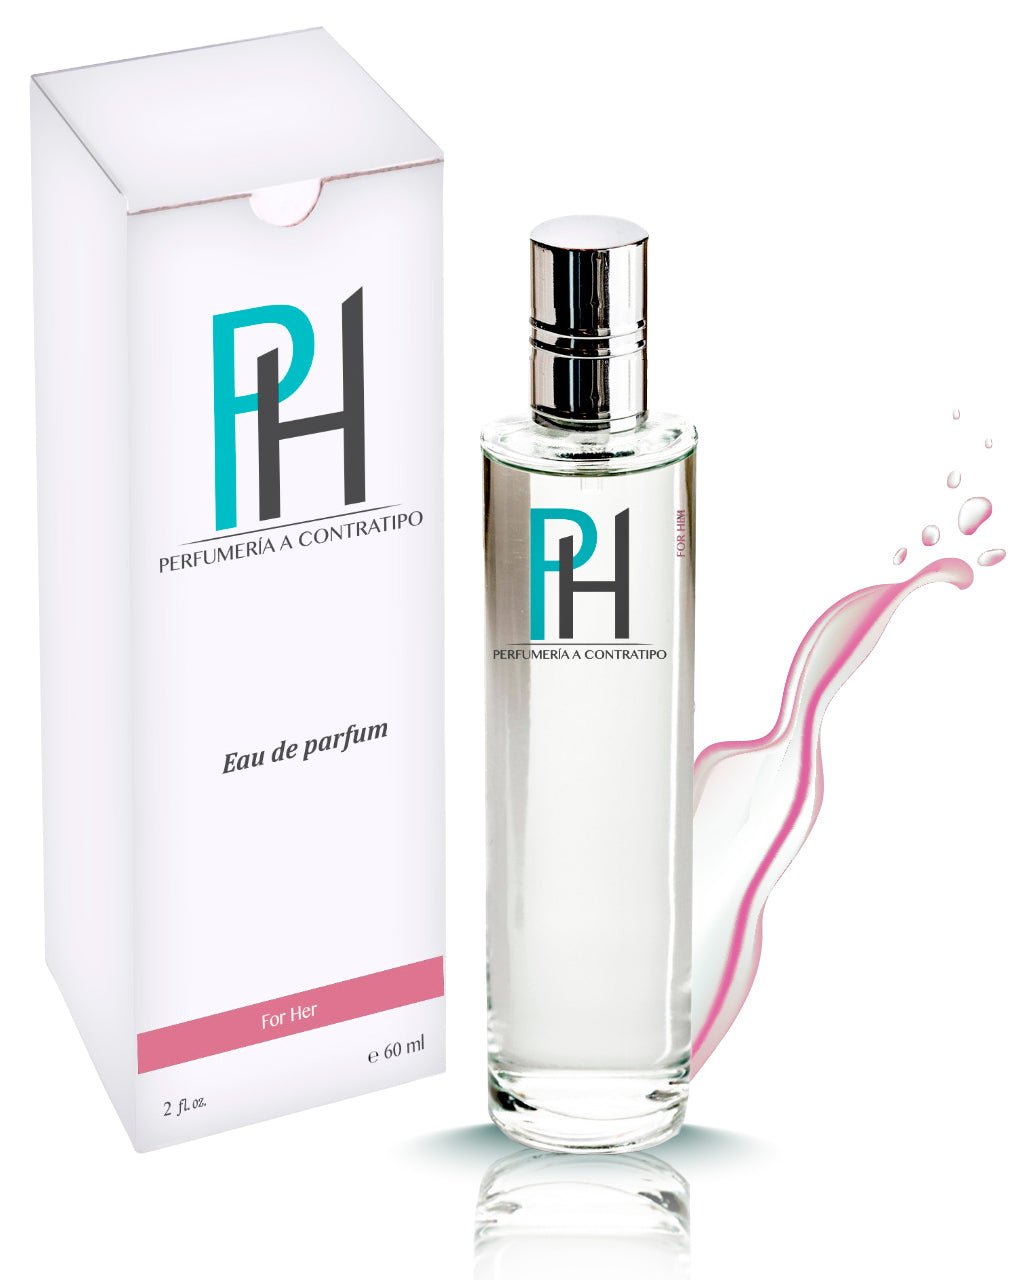 Perfume Adore de 60 ml - PH Perfumería a Contratipo